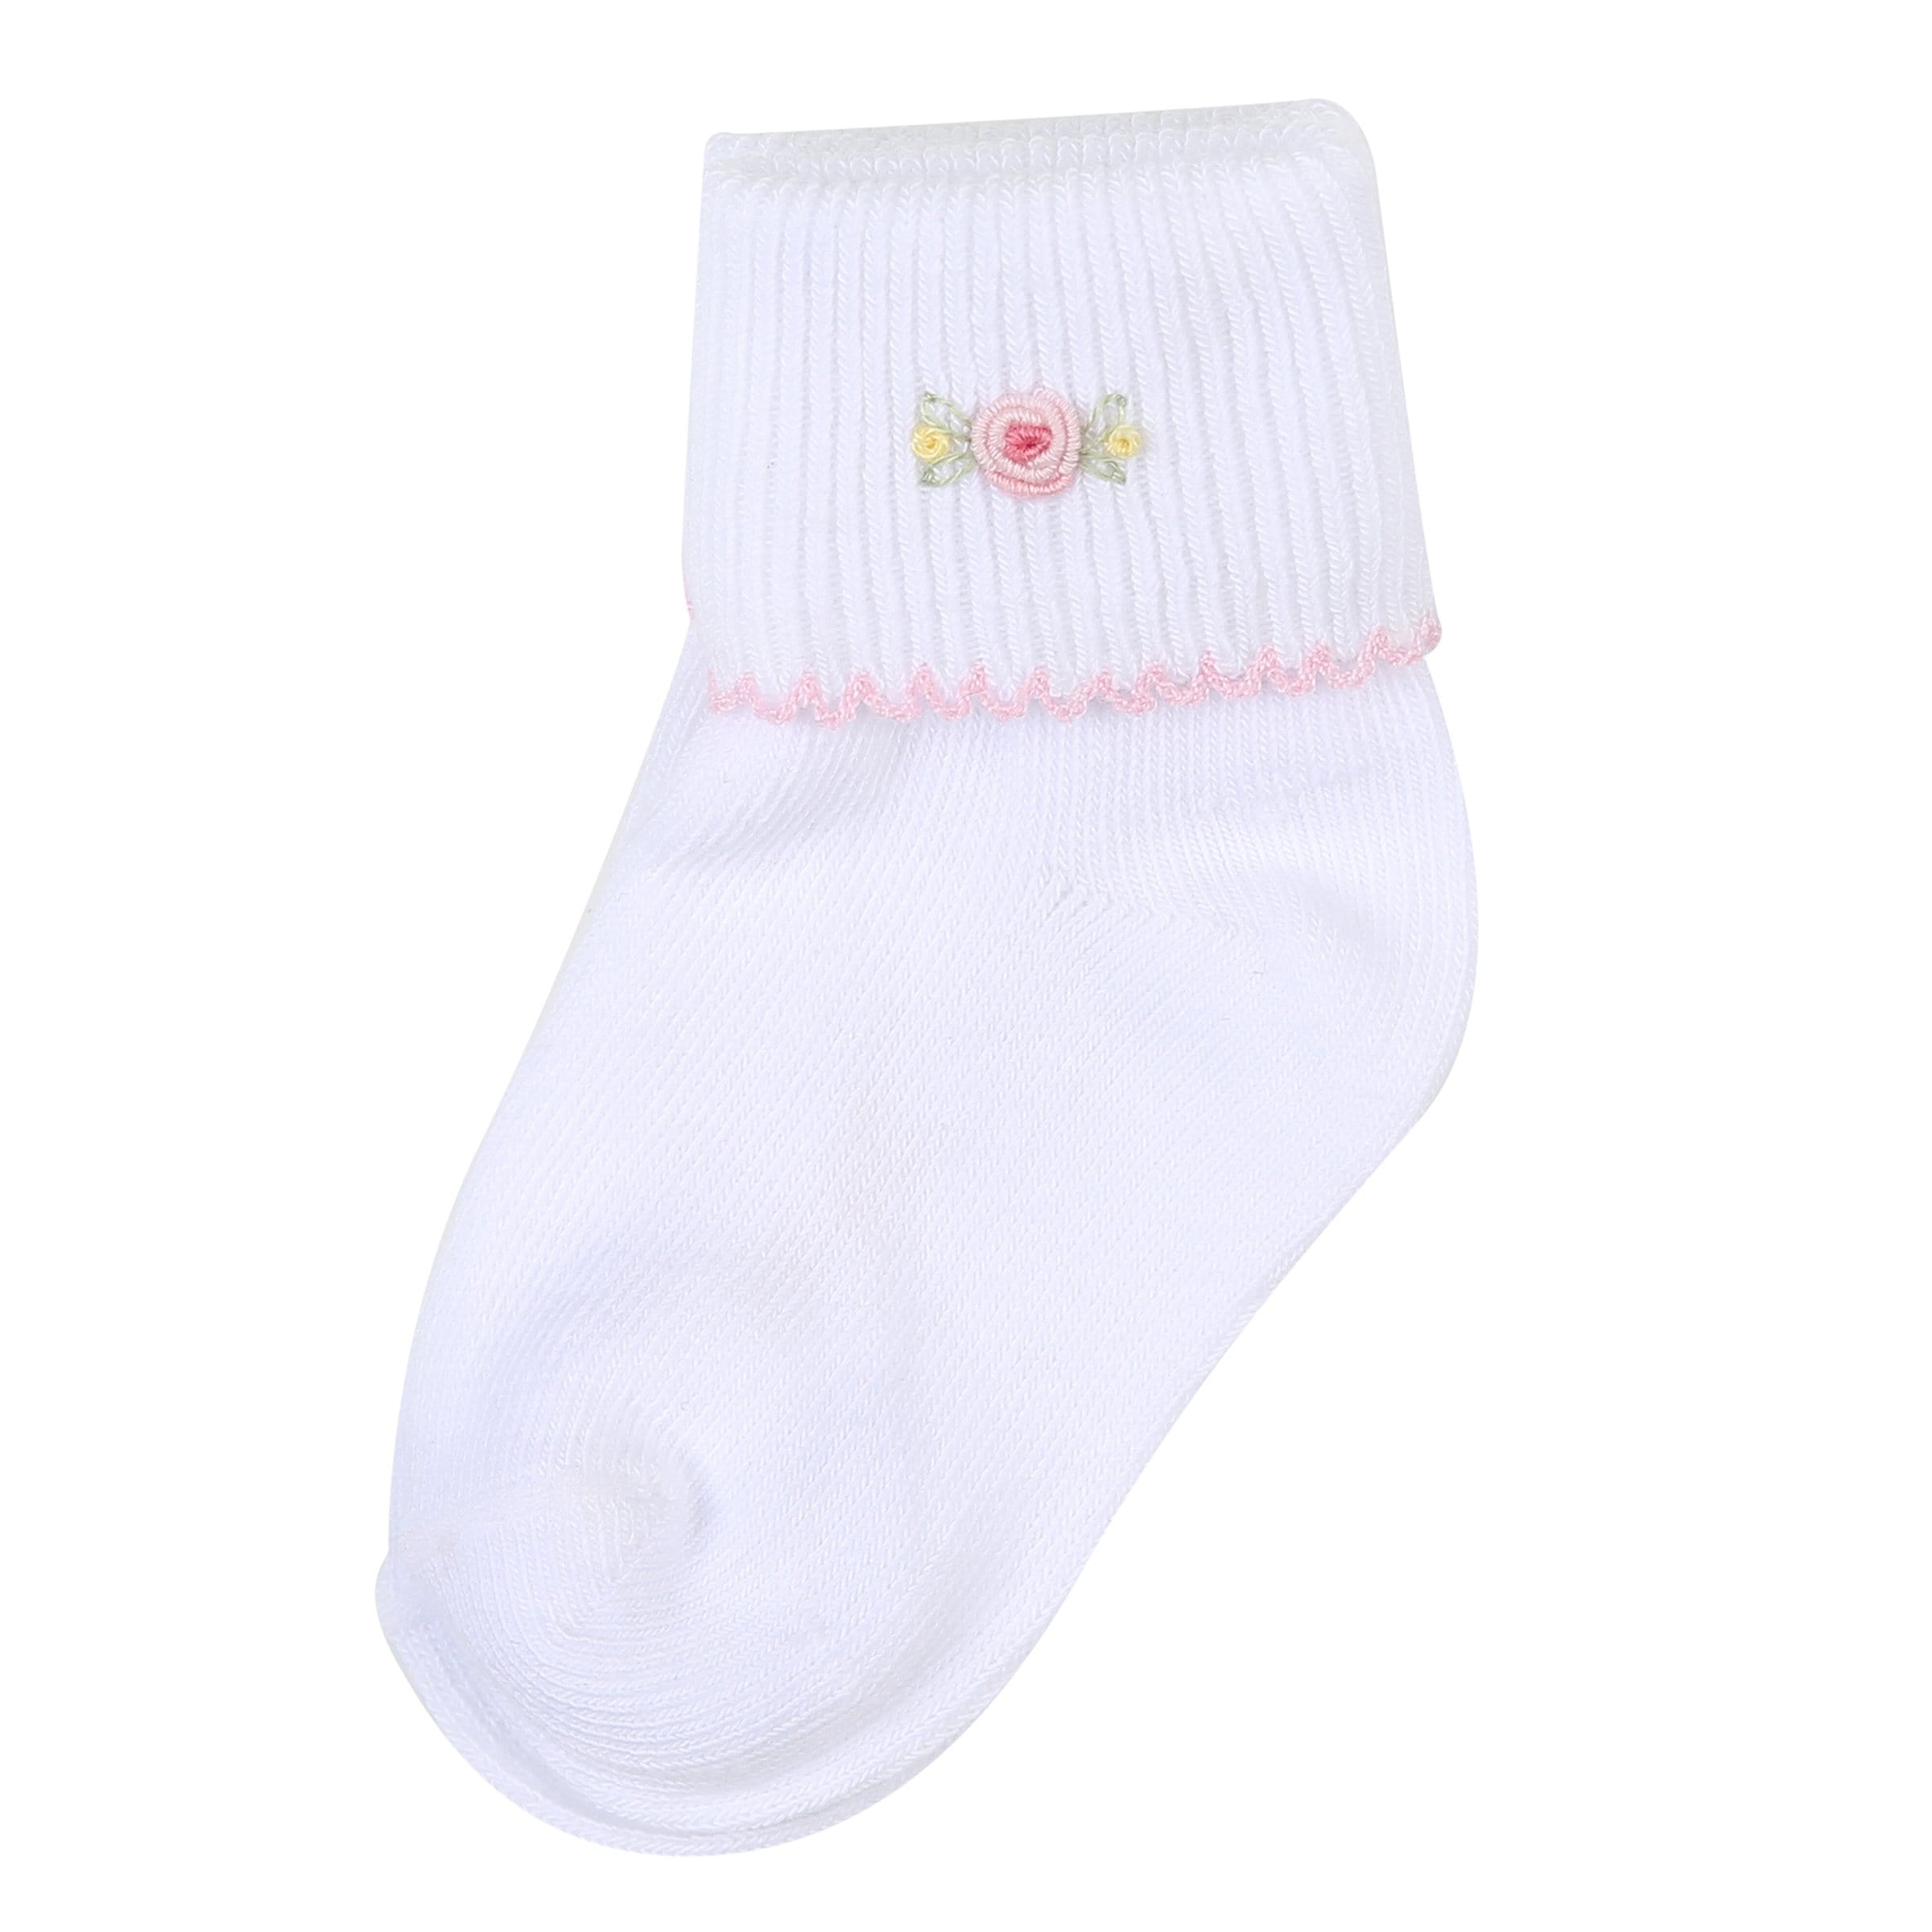 MAGNOLIA BABY - Graces Classics Socks - Floral